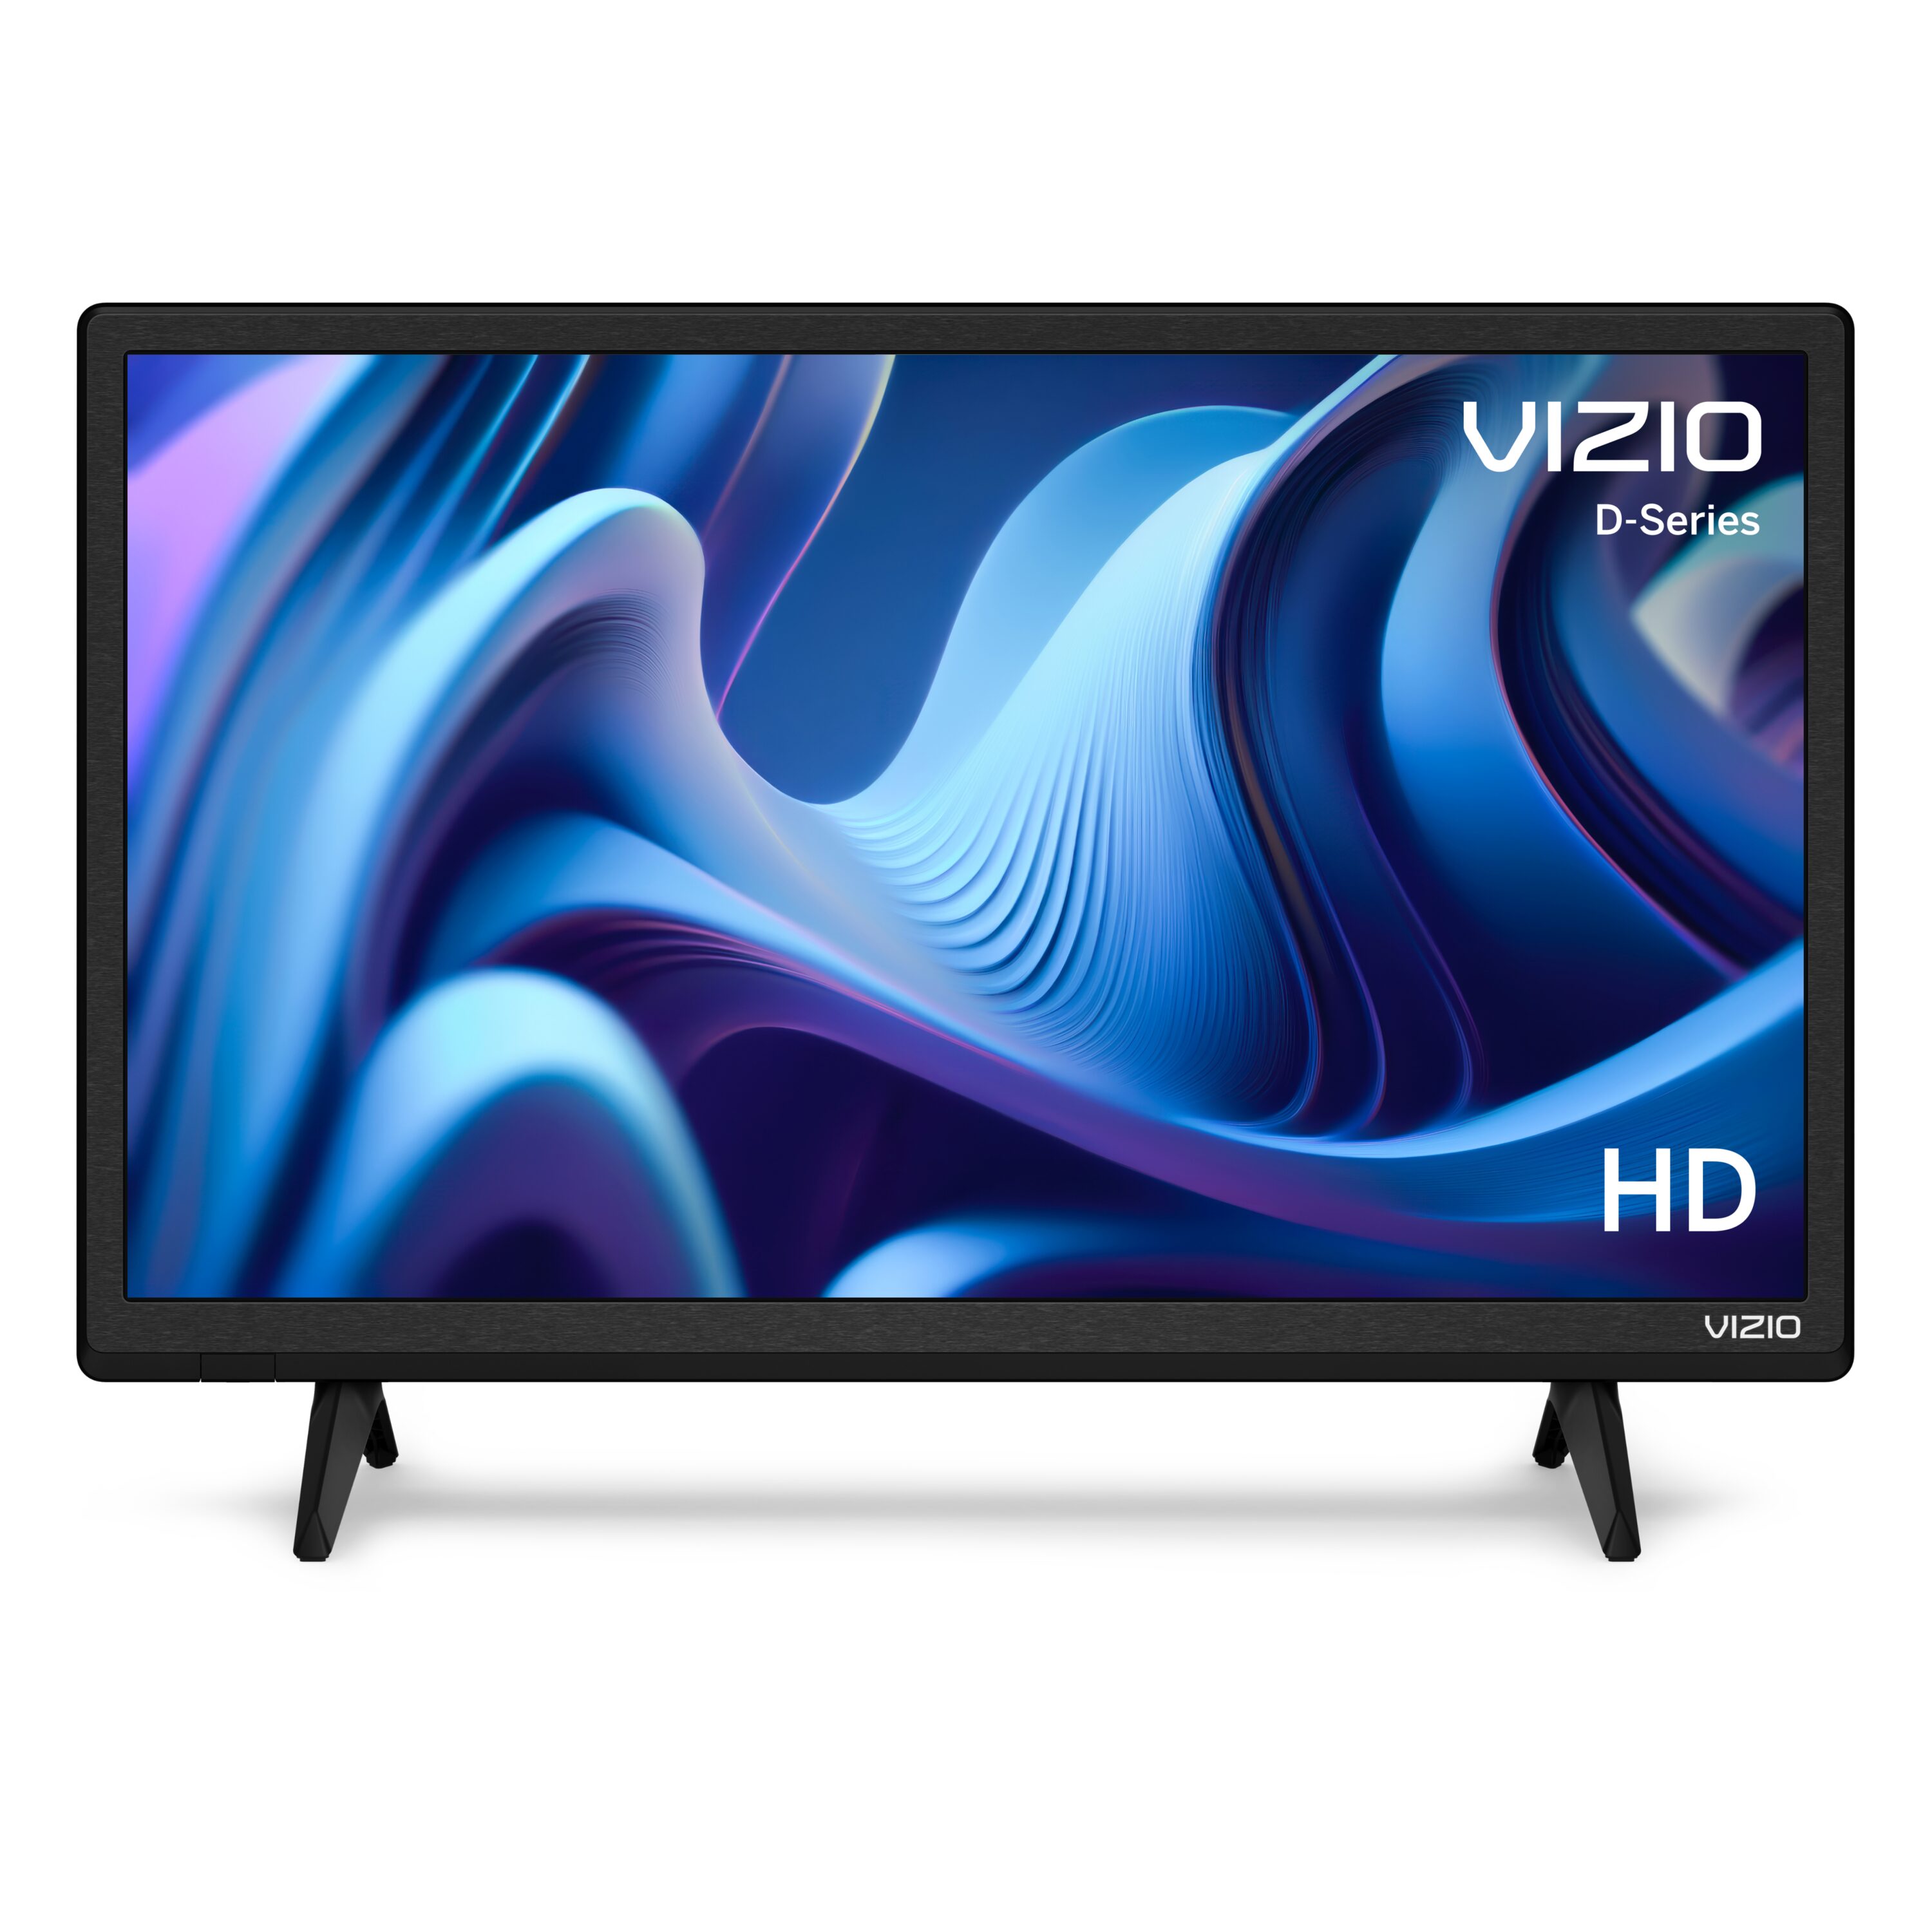 VIZIO 24" Class D-Series HD LED Smart TV D24h-J09 - image 3 of 18